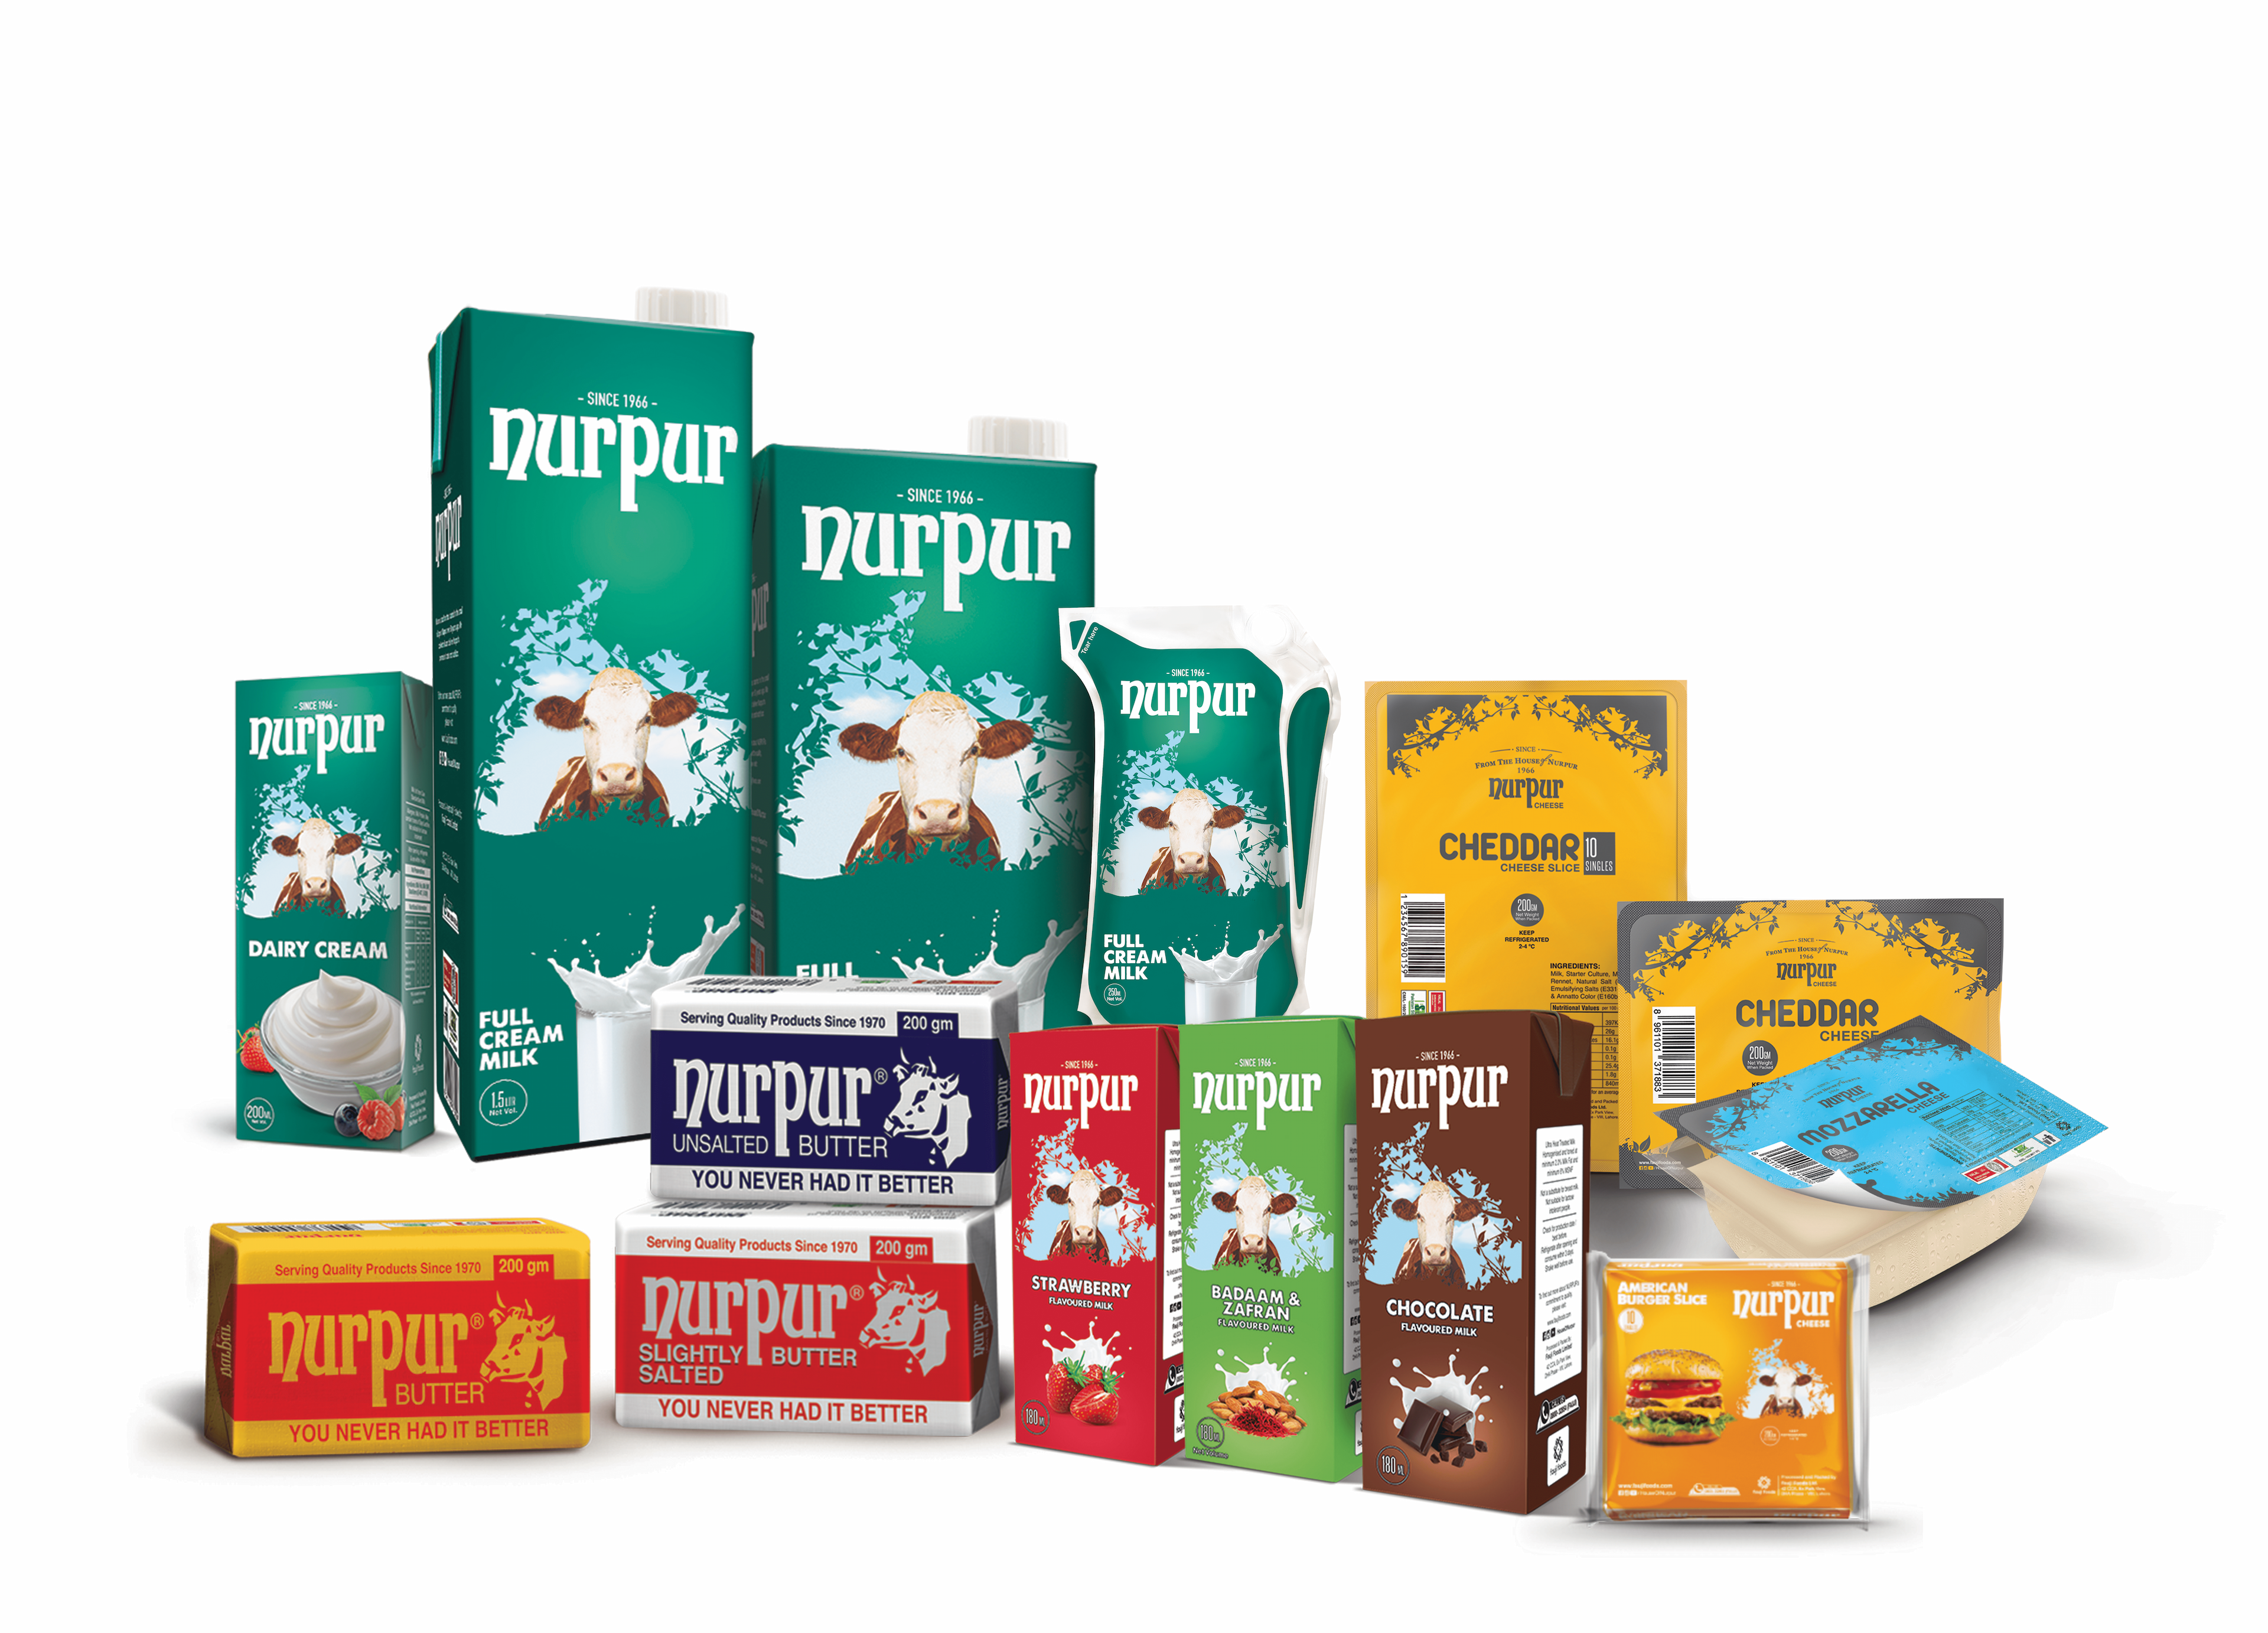 nurpur products